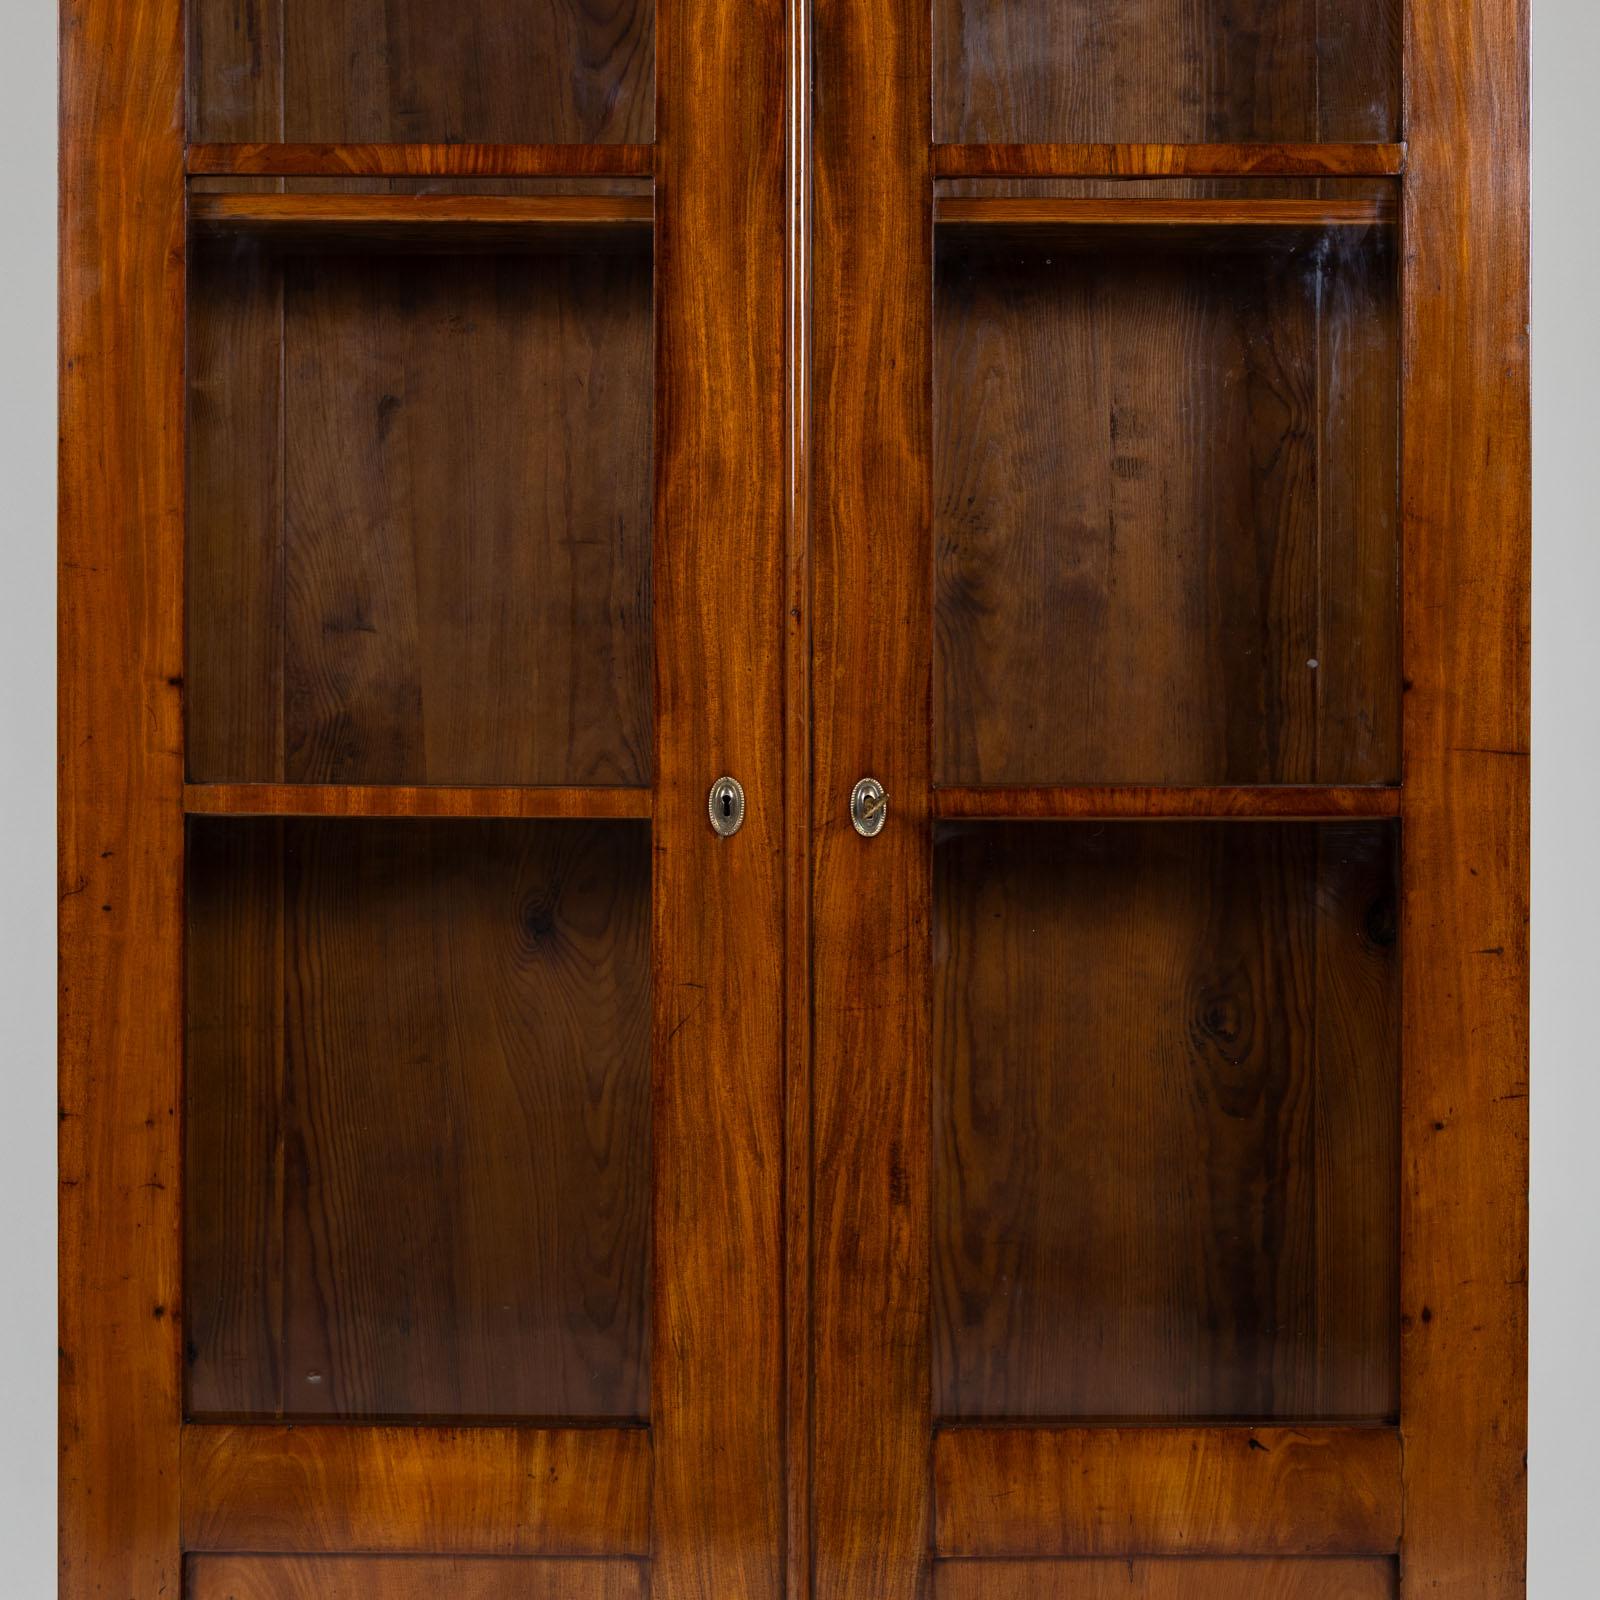 Biedermeier Bücherschrank mit zwei Türen mit Dreiviertelverglasung und flachem profiliertem Gesims. Der Schrank steht auf quadratischen Füßen und ist mit Mahagoni furniert. Der Innenraum ist mit vier verstellbaren Einlegeböden ausgestattet. Das